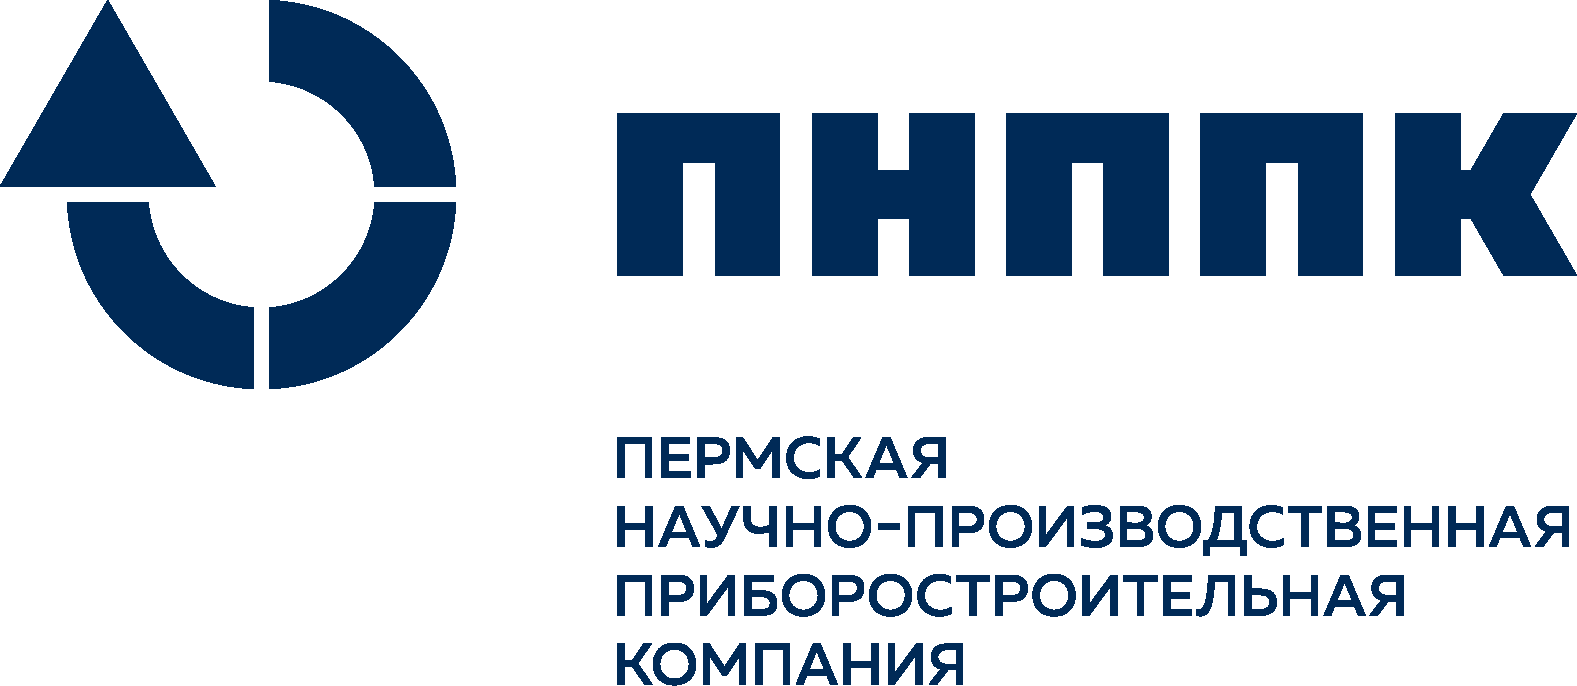 ПАО «Пермская научно-производственная приборостроительная компания» (ПНППК)